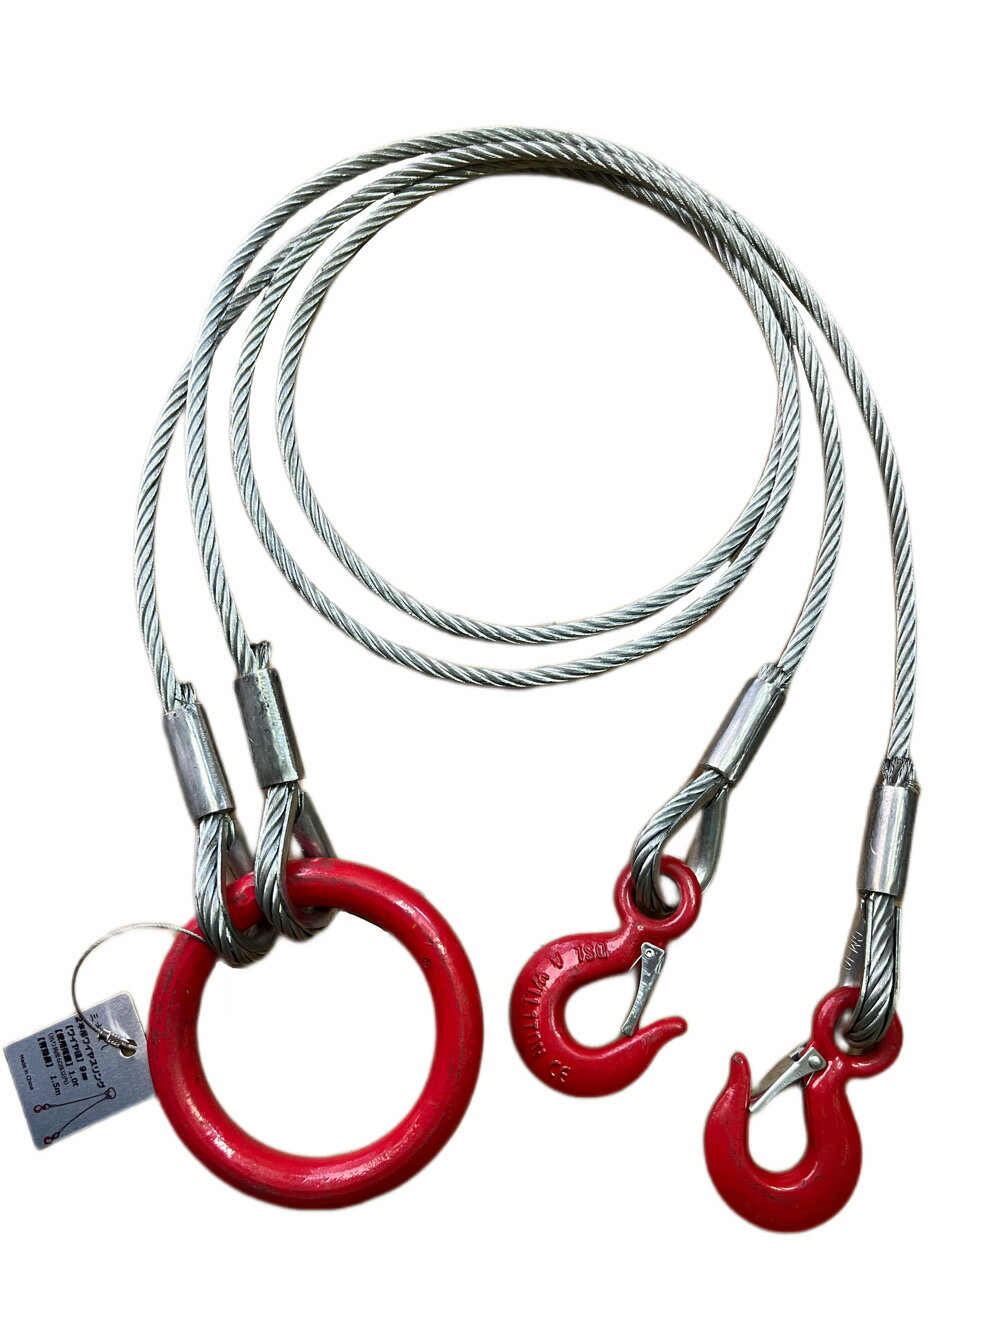 送料無料2点吊りワイヤーフック付 1.0tonx1.5m 2点吊りワイヤースリング ワイヤー径9mm 全長さ1.5m 作業工具　荷締機…